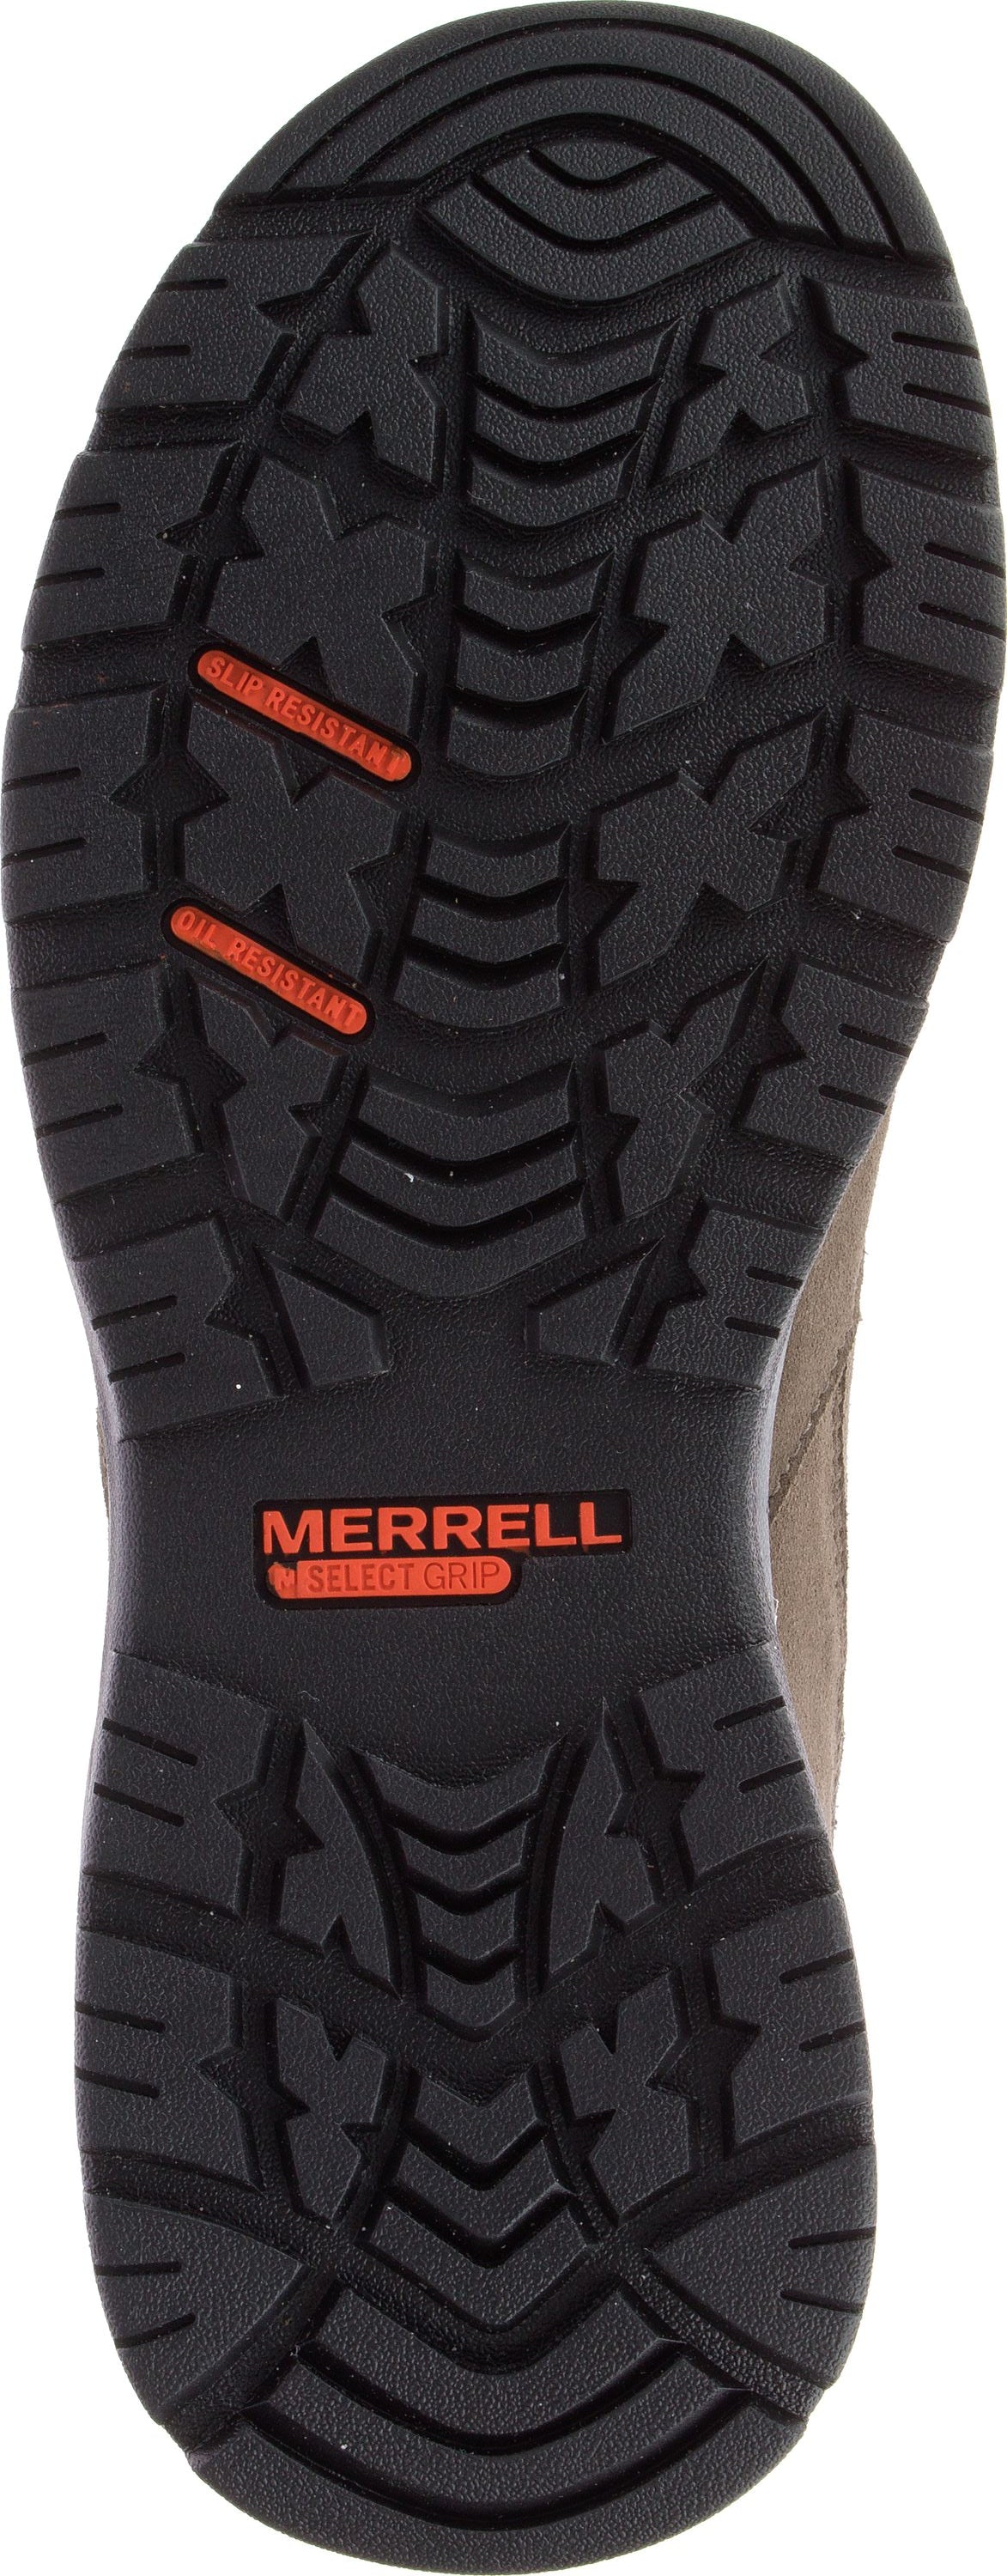 Merrell Boots Men's Windoc Mid Waterproof Csa Steel Toe Boulder